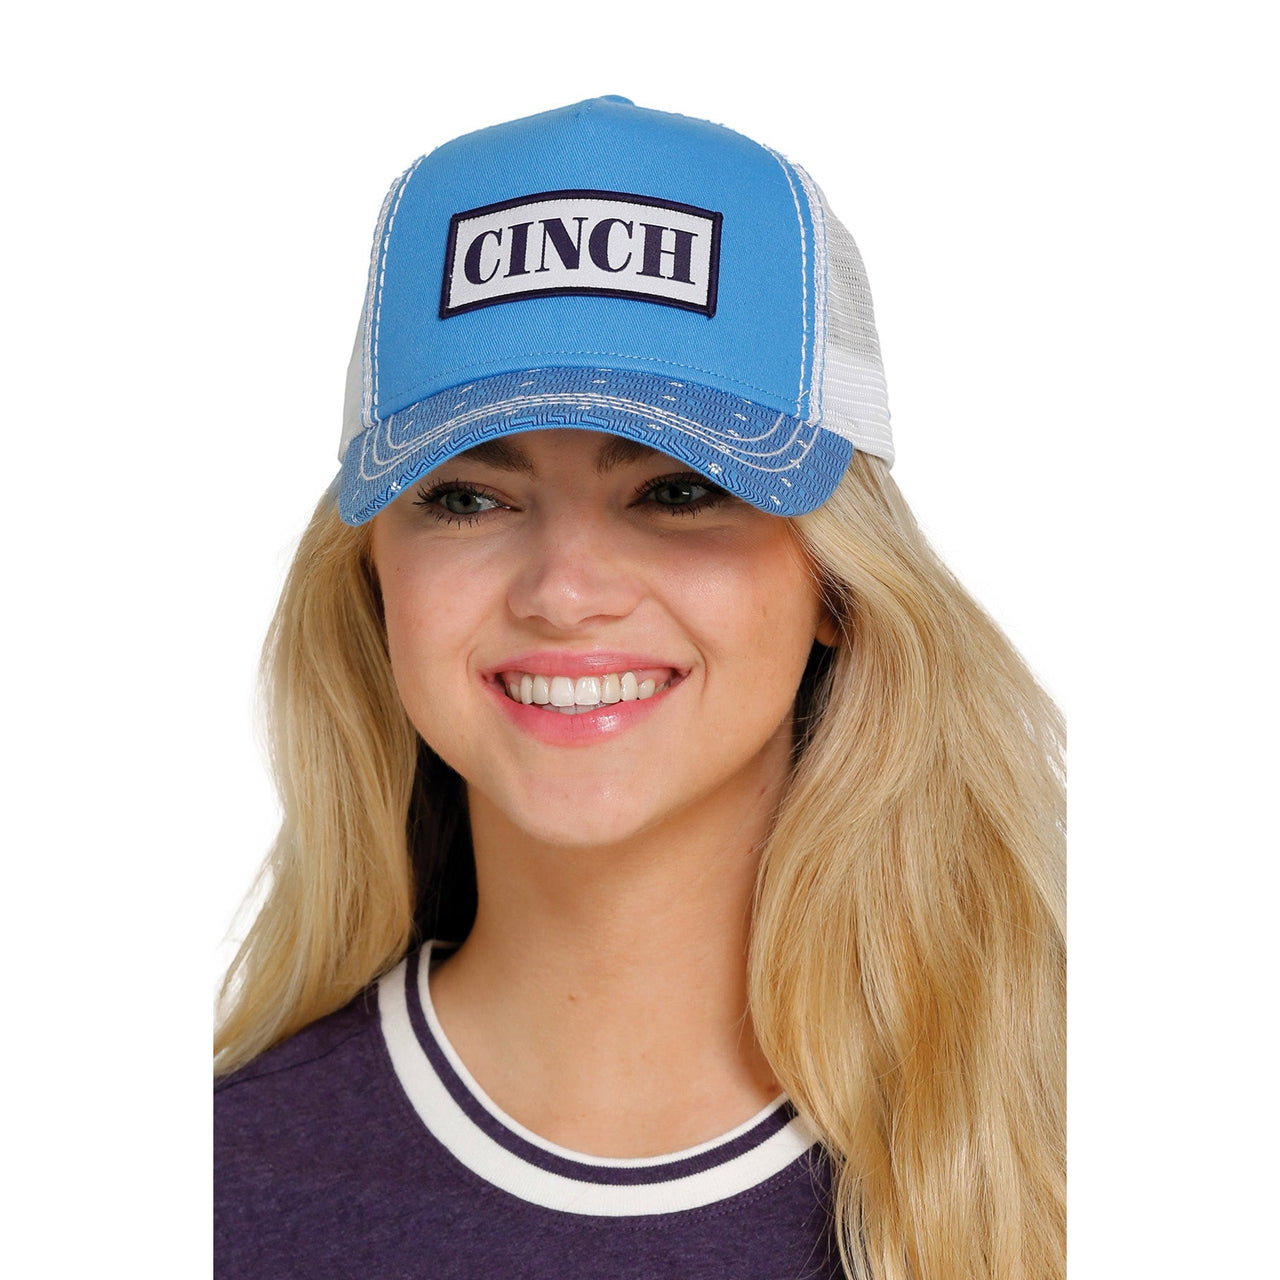 Cinch Womens Trucker Cap  Light Blue